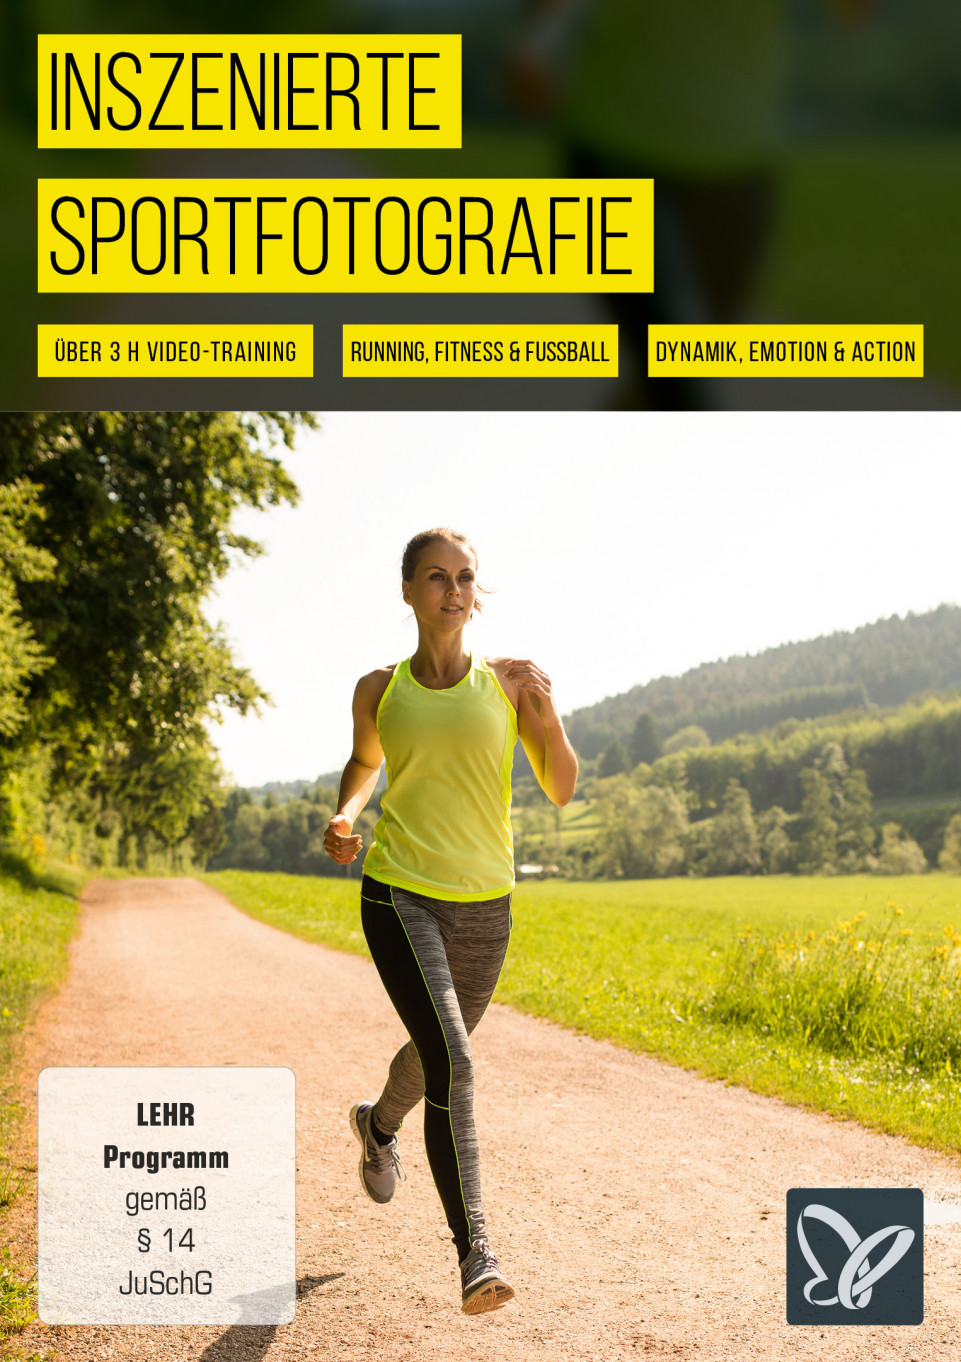 Inszenierte Sportfotografie – Tipps & Tricks